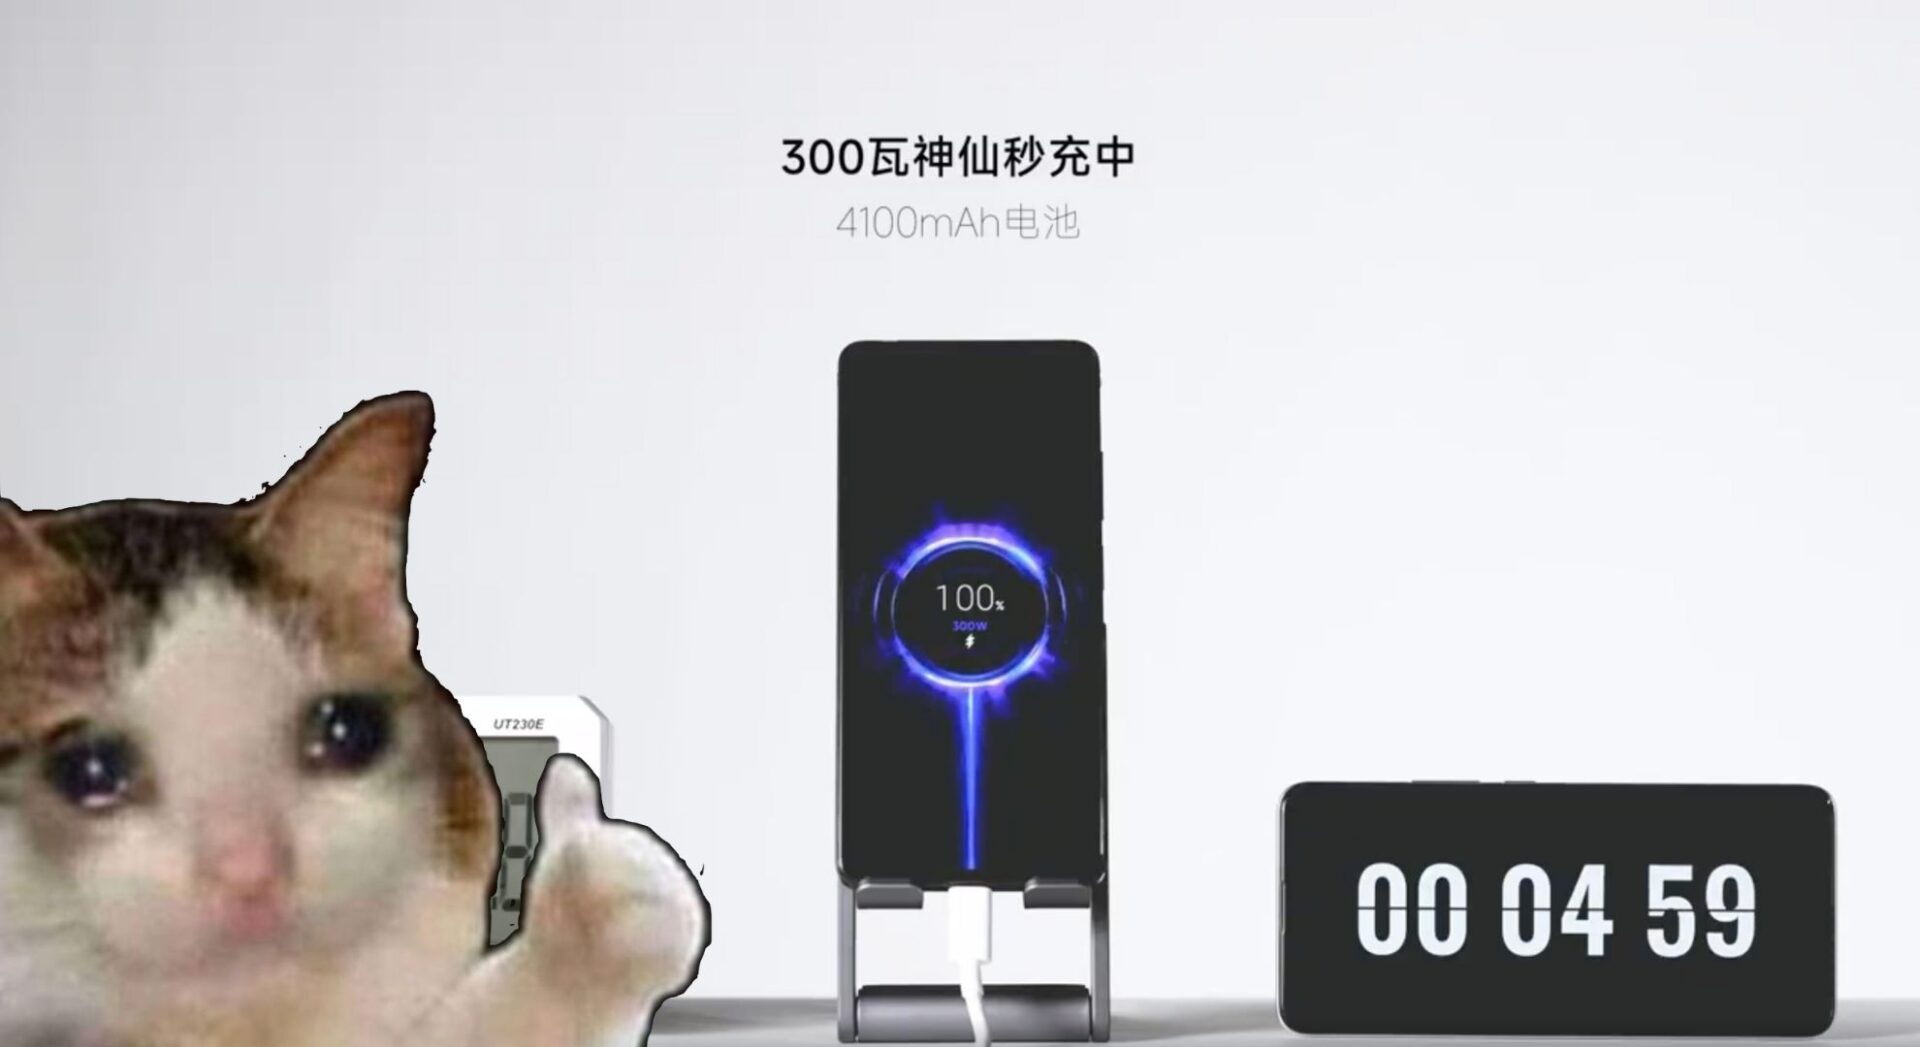 เร็วจนน้ำตาเล็ด ! Redmi (Xiaomi) อวดเทคโนโลยีชาร์จเร็ว 300W ชาร์จเต็มภายใน 5 นาที